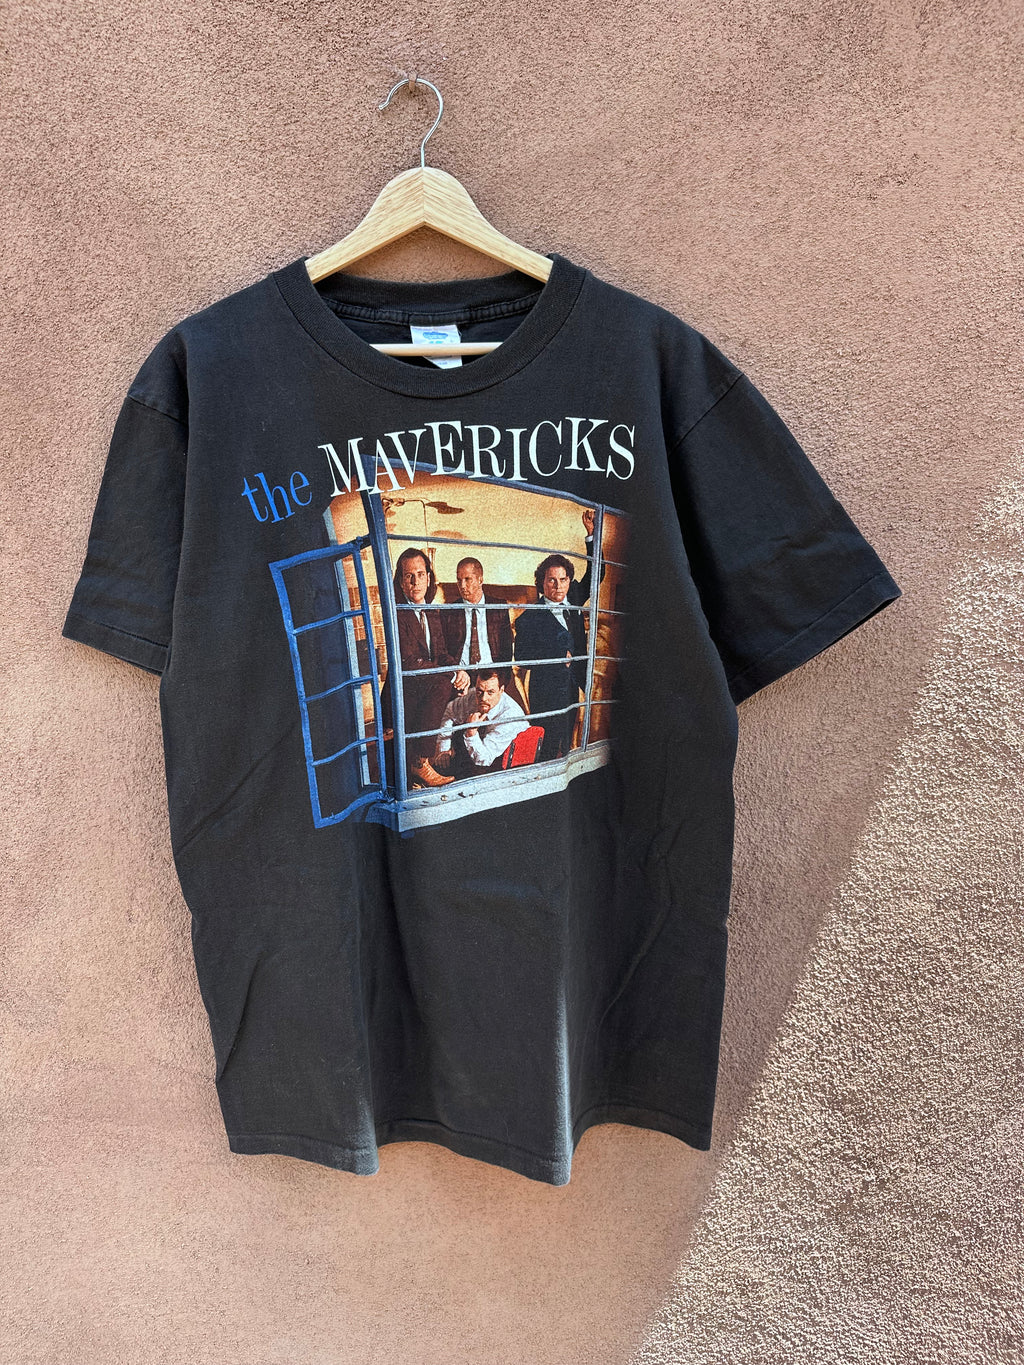 Desert Moss Vintage Authentic 1980 Grateful Dead Tour T-Shirt, Size Medium, Downerwear Label